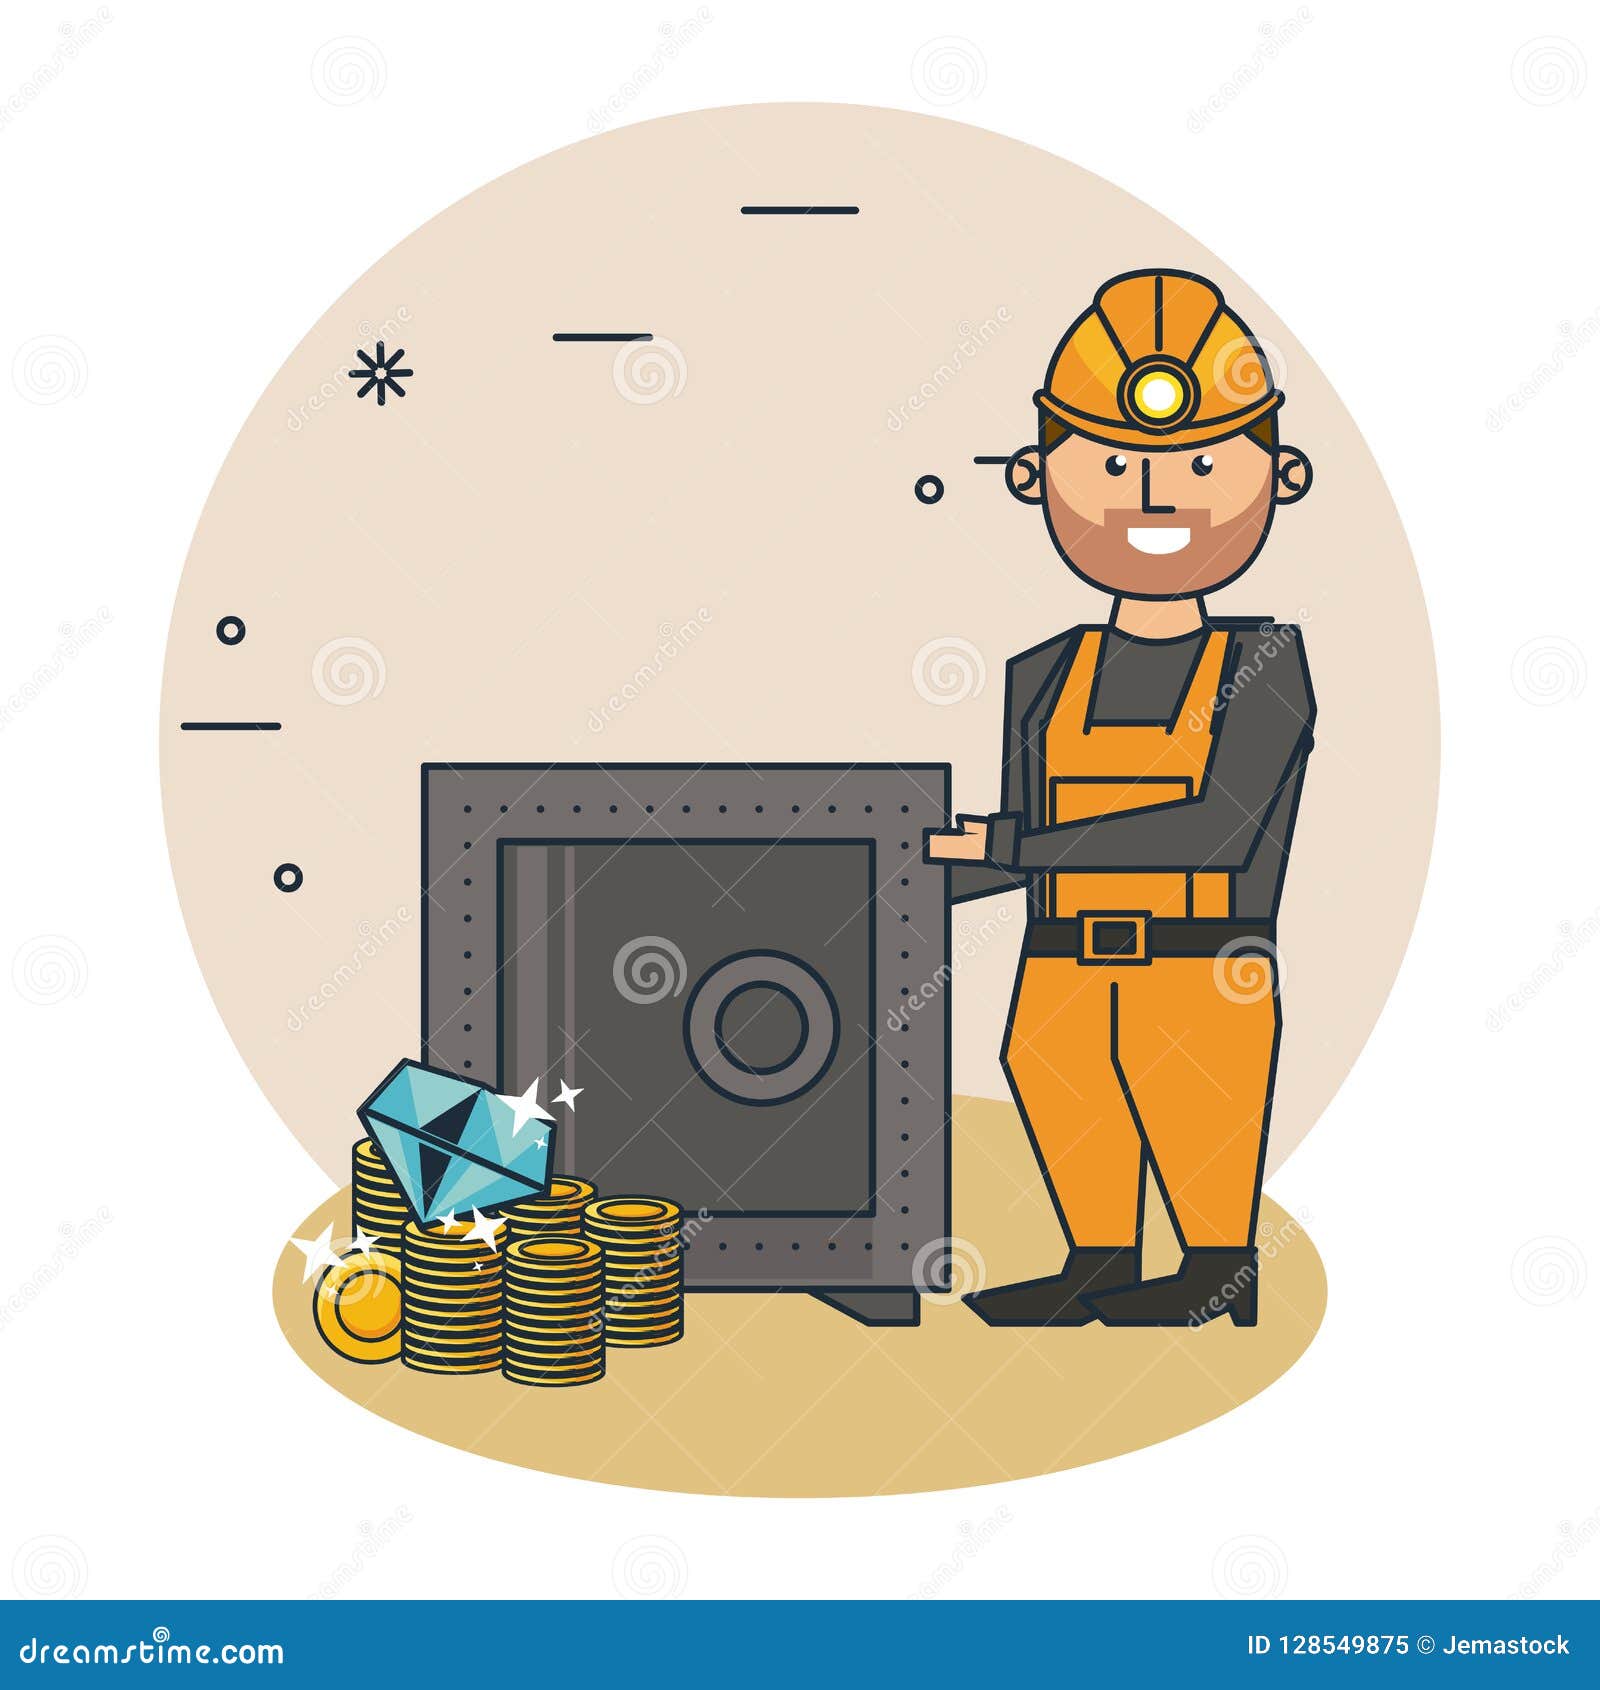 Bitcoin Mining Cartoons Stock Vector Illustration Of Mining 128549875 - 